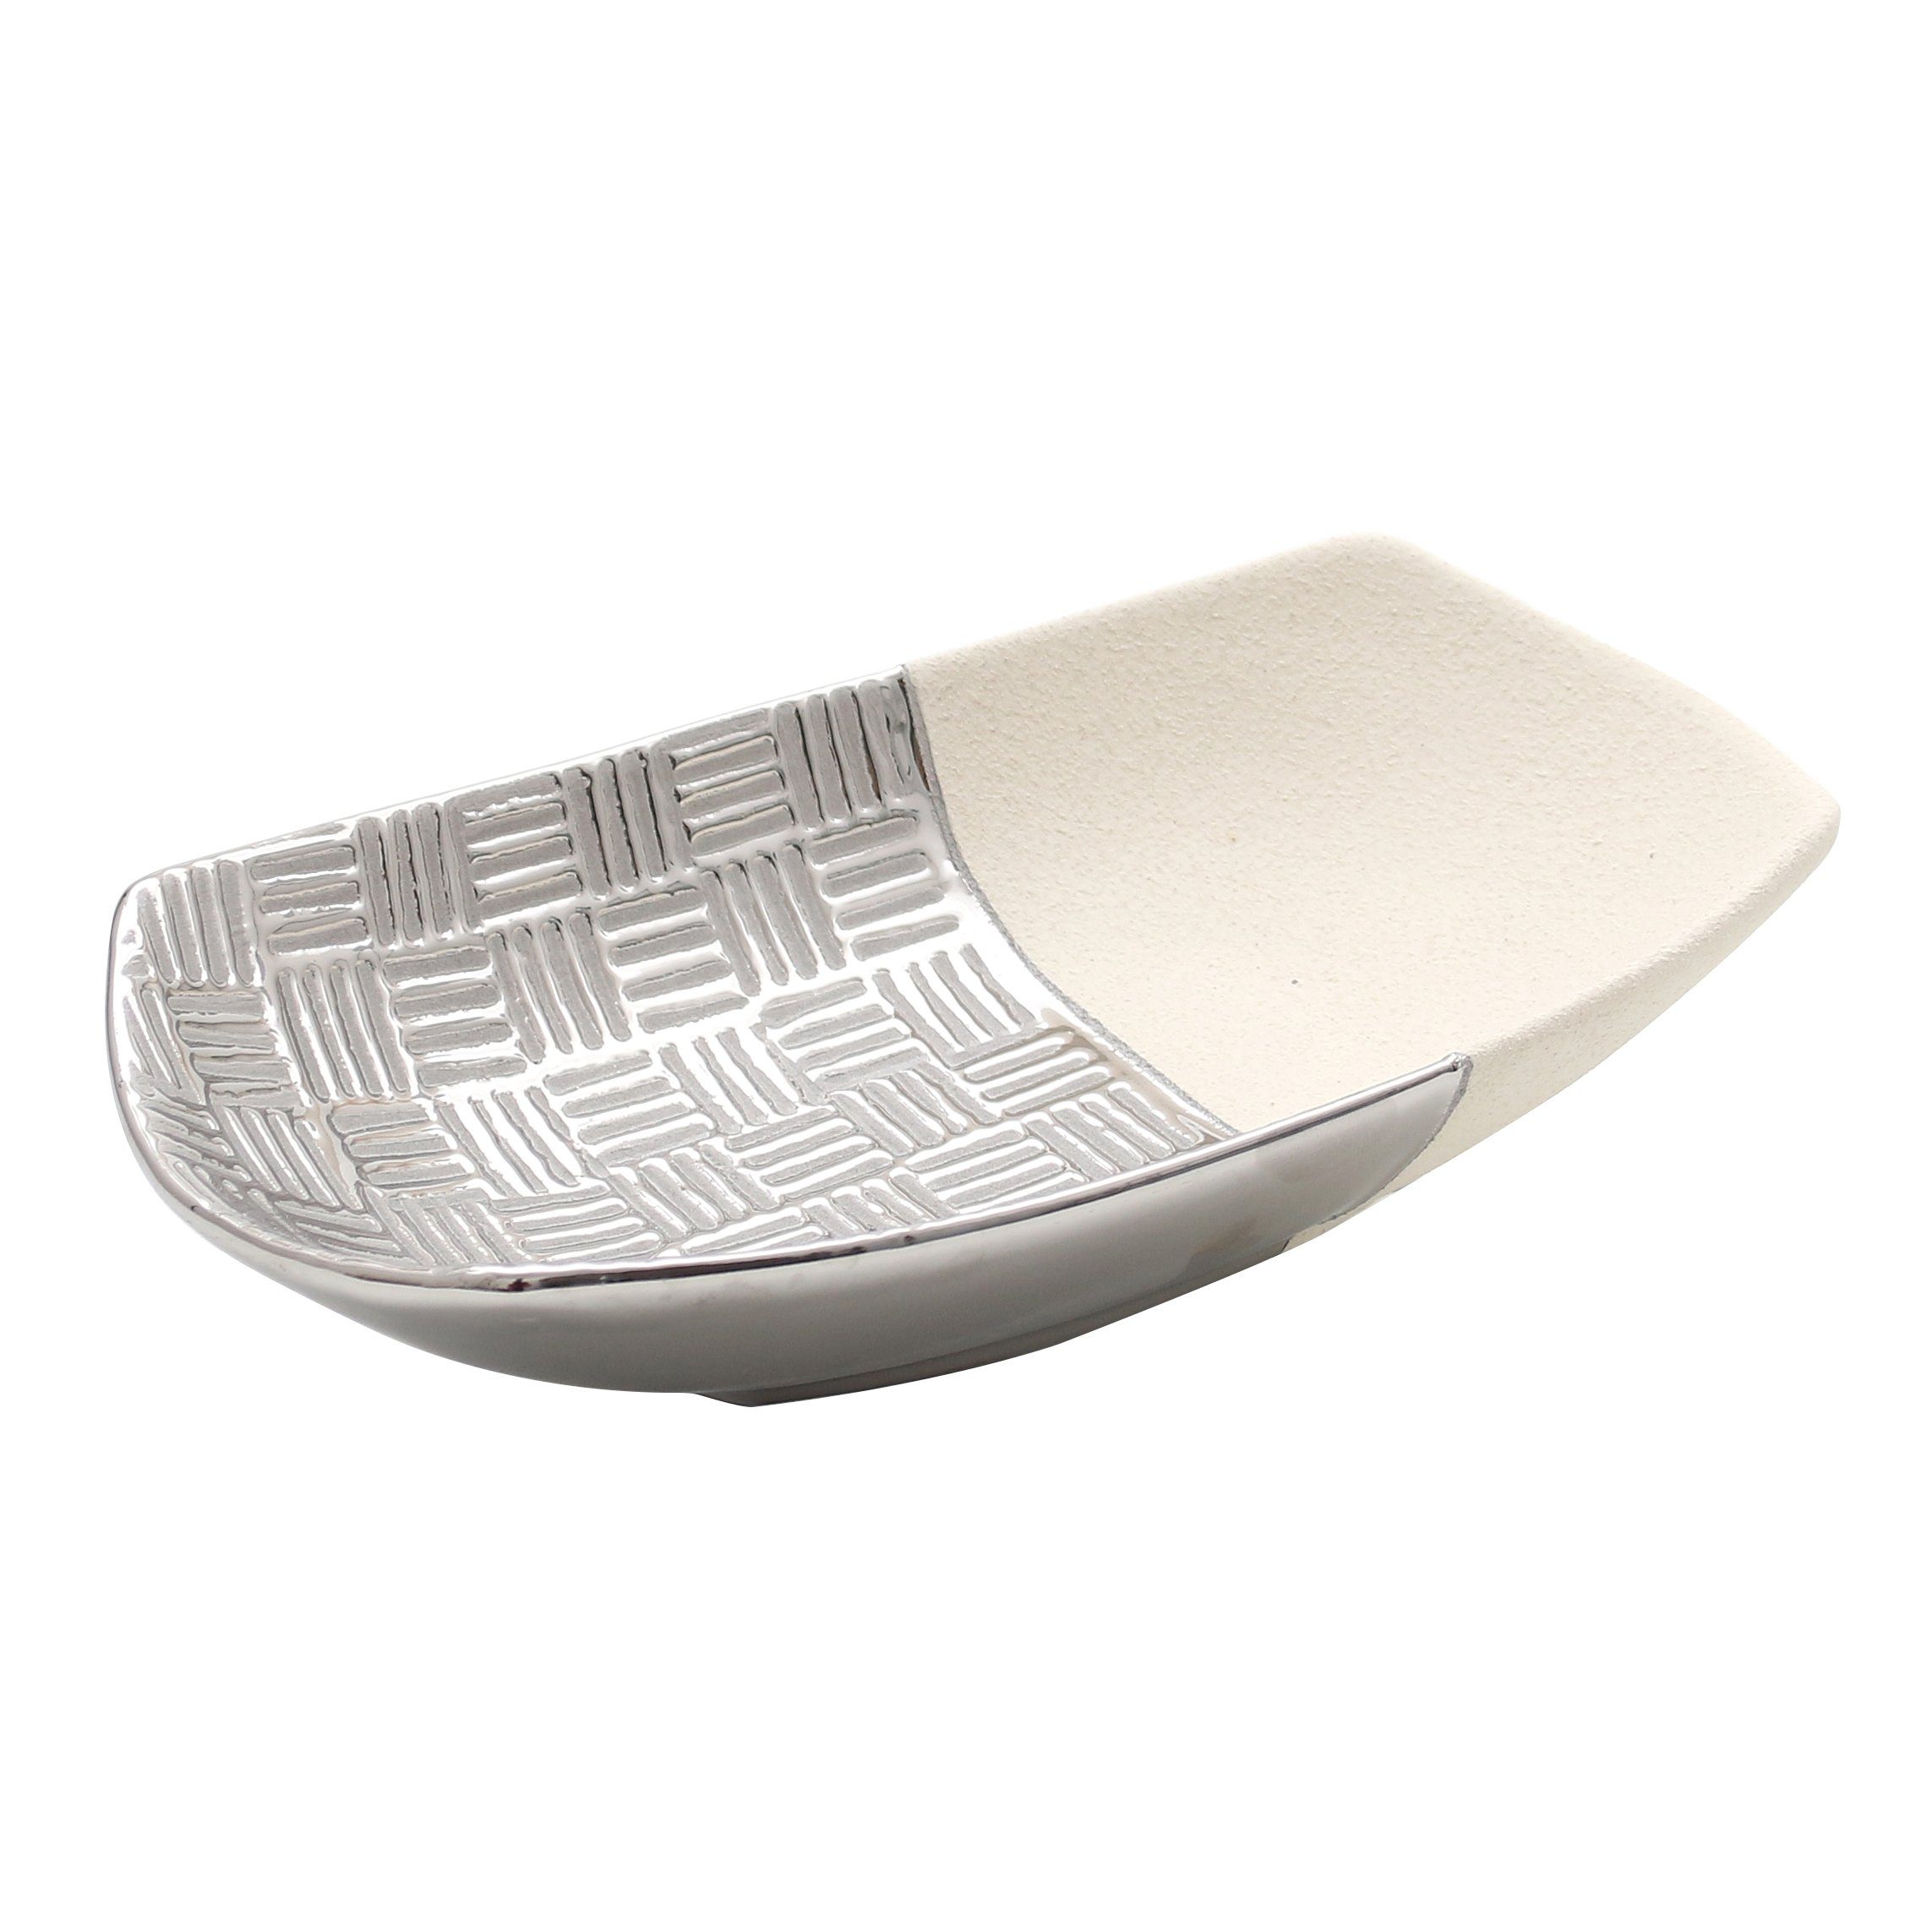 Dekohelden24 Dekoschale Edle moderne Deko Designer Keramik Dekoschale in silber-grau weiß (1 Schale, 1 St)